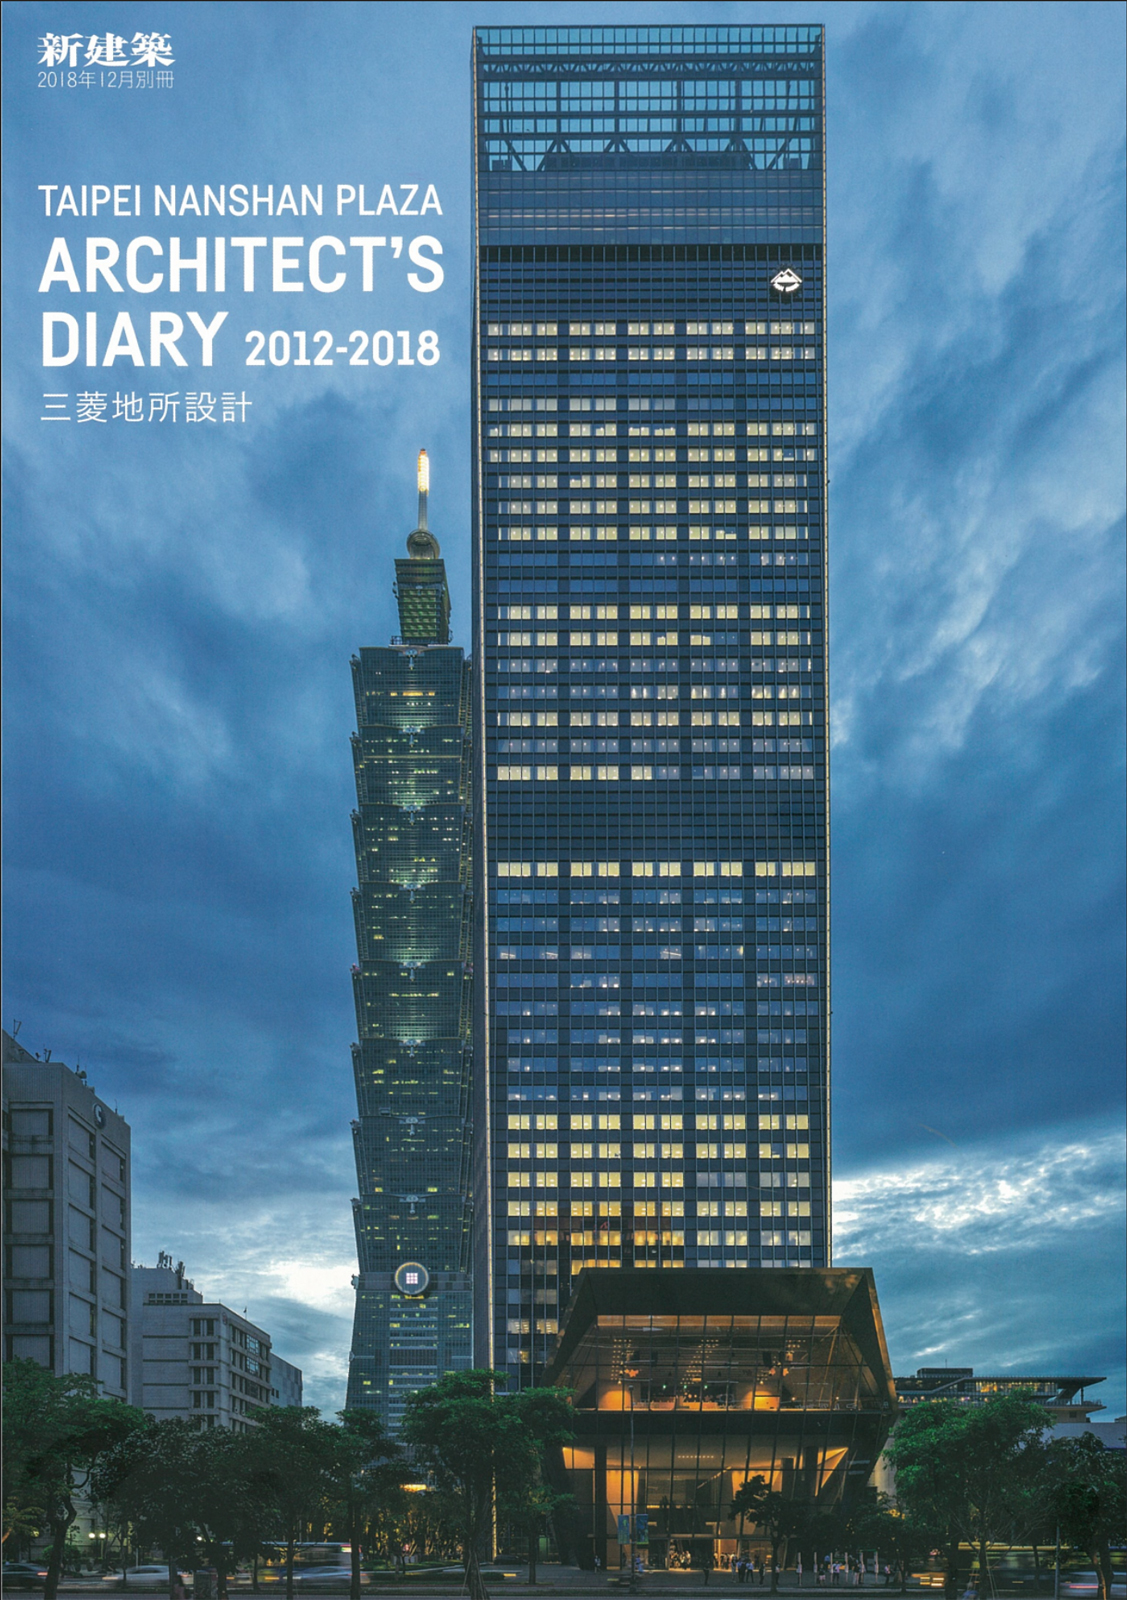 新建築 2018年12月別冊 – 臺北南山廣場 Architect's Diary 2012-2018 